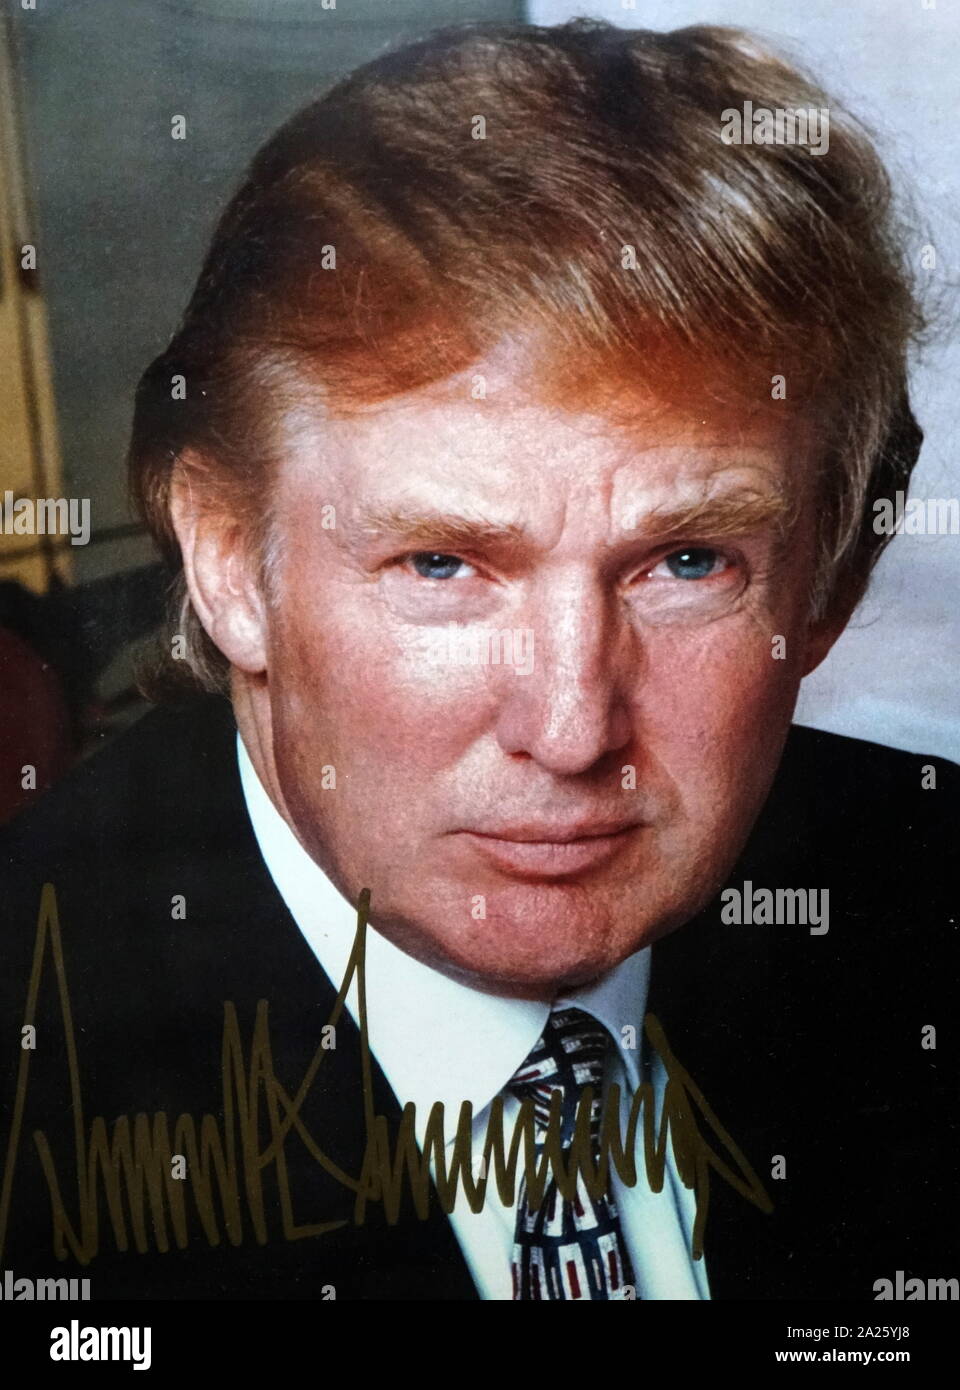 Une photo autographiée de Donald Trump. Donald John Trump (1946-) homme politique, homme d'affaires américain, personnalité de la télévision et 45e président des États-Unis d'Amérique. Banque D'Images